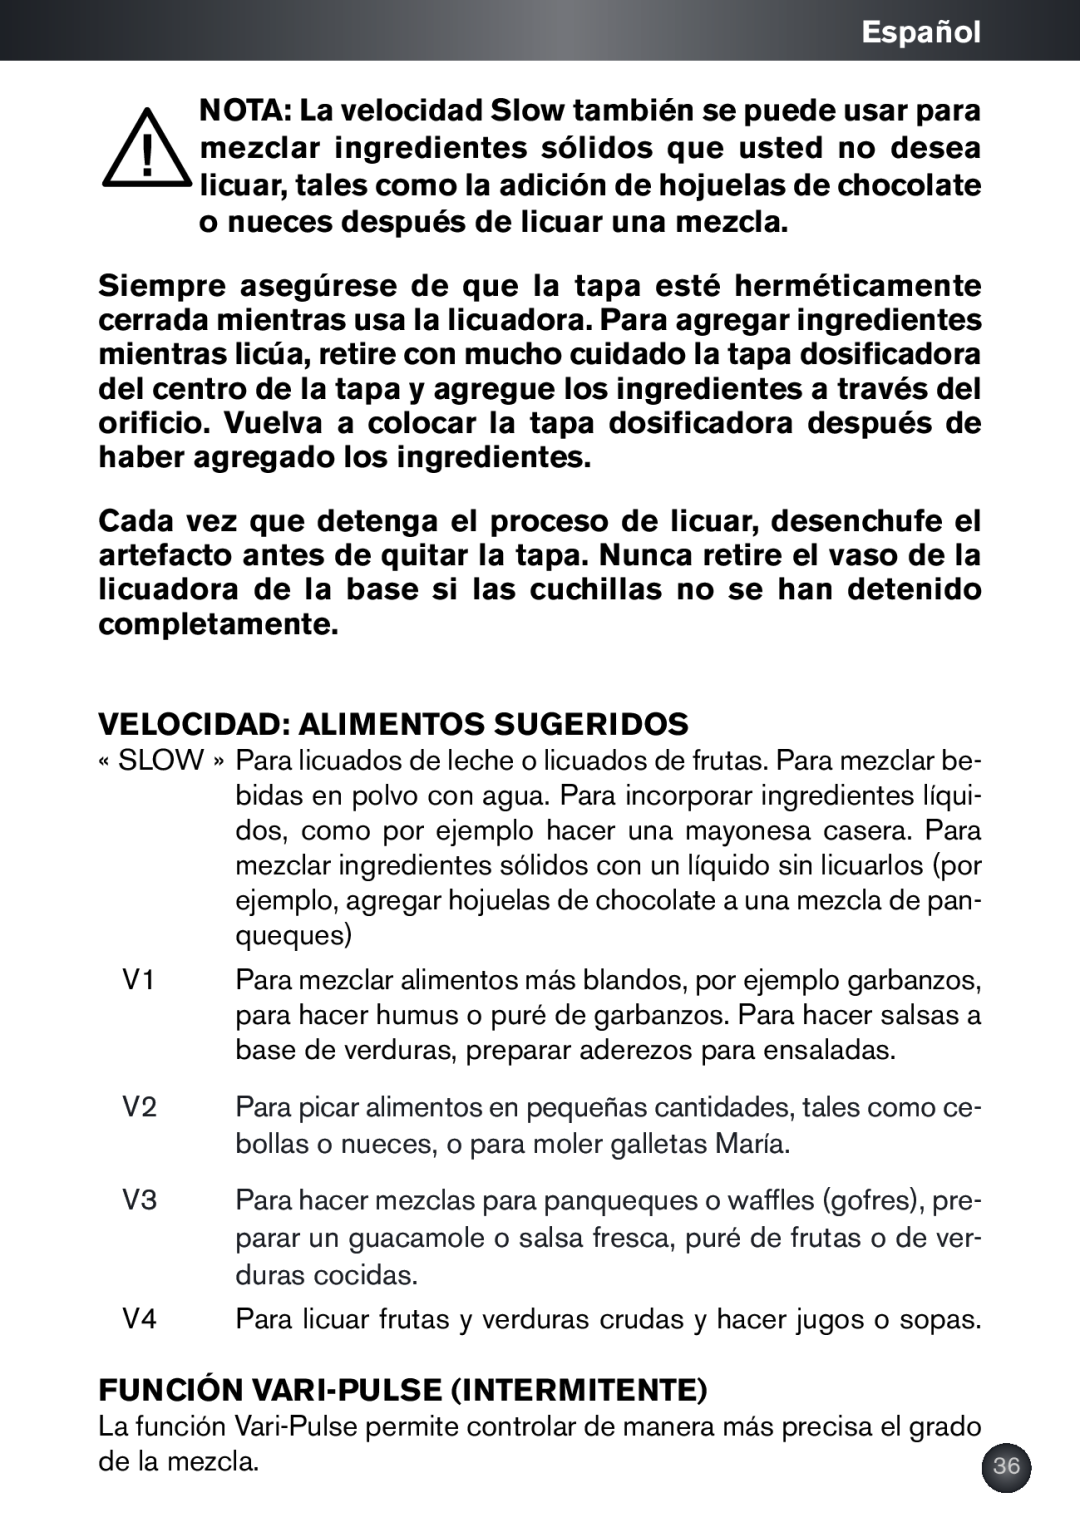 Krups KB790 manual Español, Velocidad Alimentos Sugeridos, Función Vari-Pulse Intermitente 